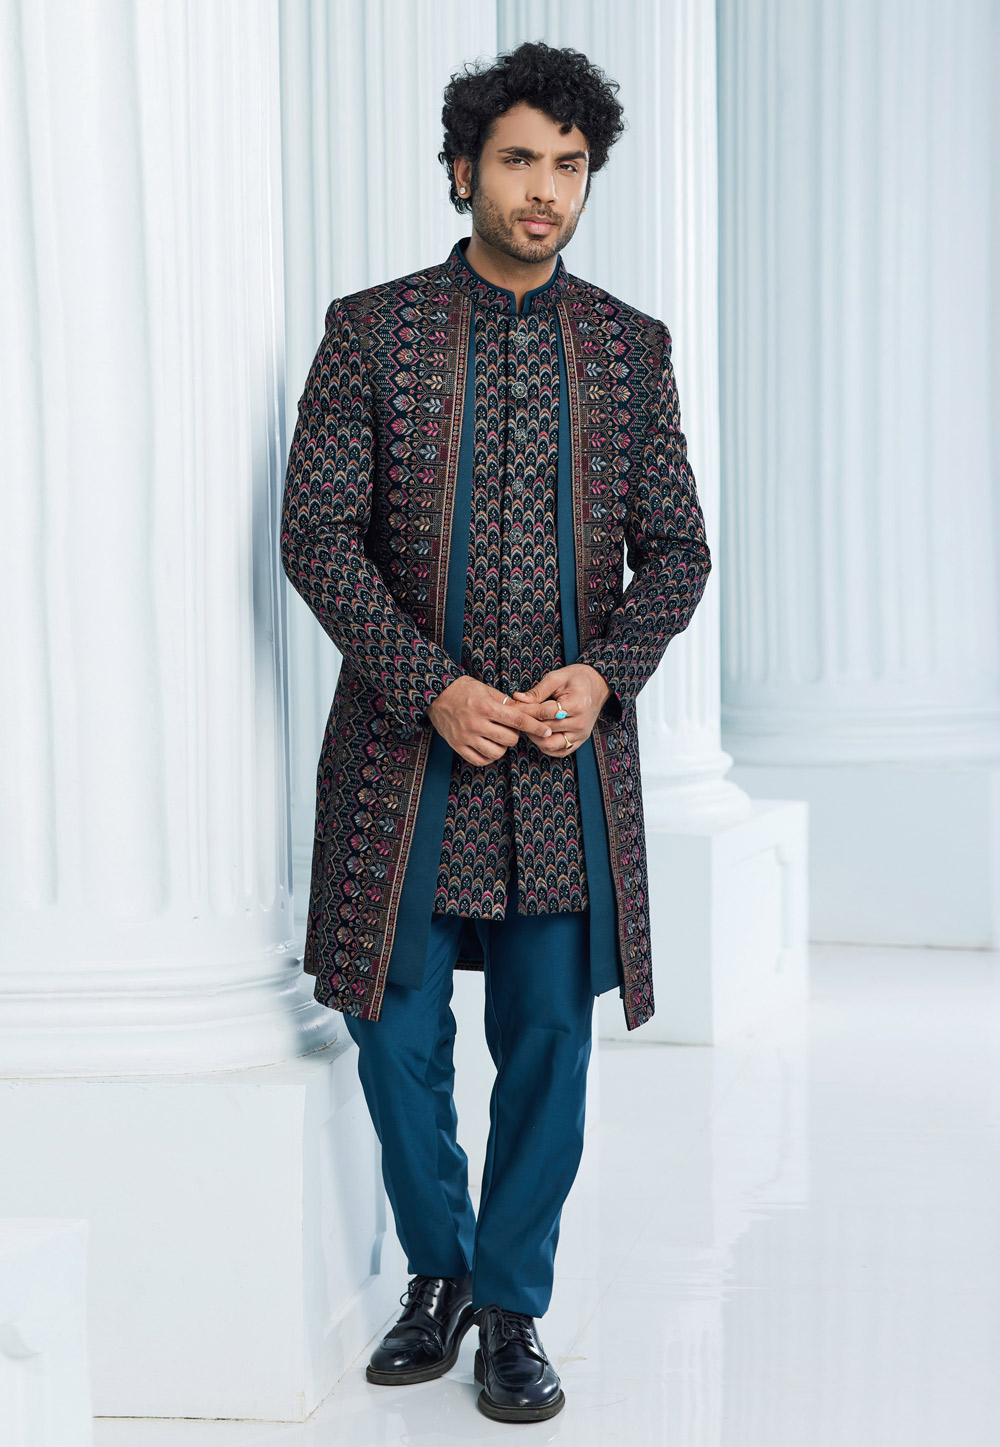 Teal Velvet Jacket Style Sherwani 275155